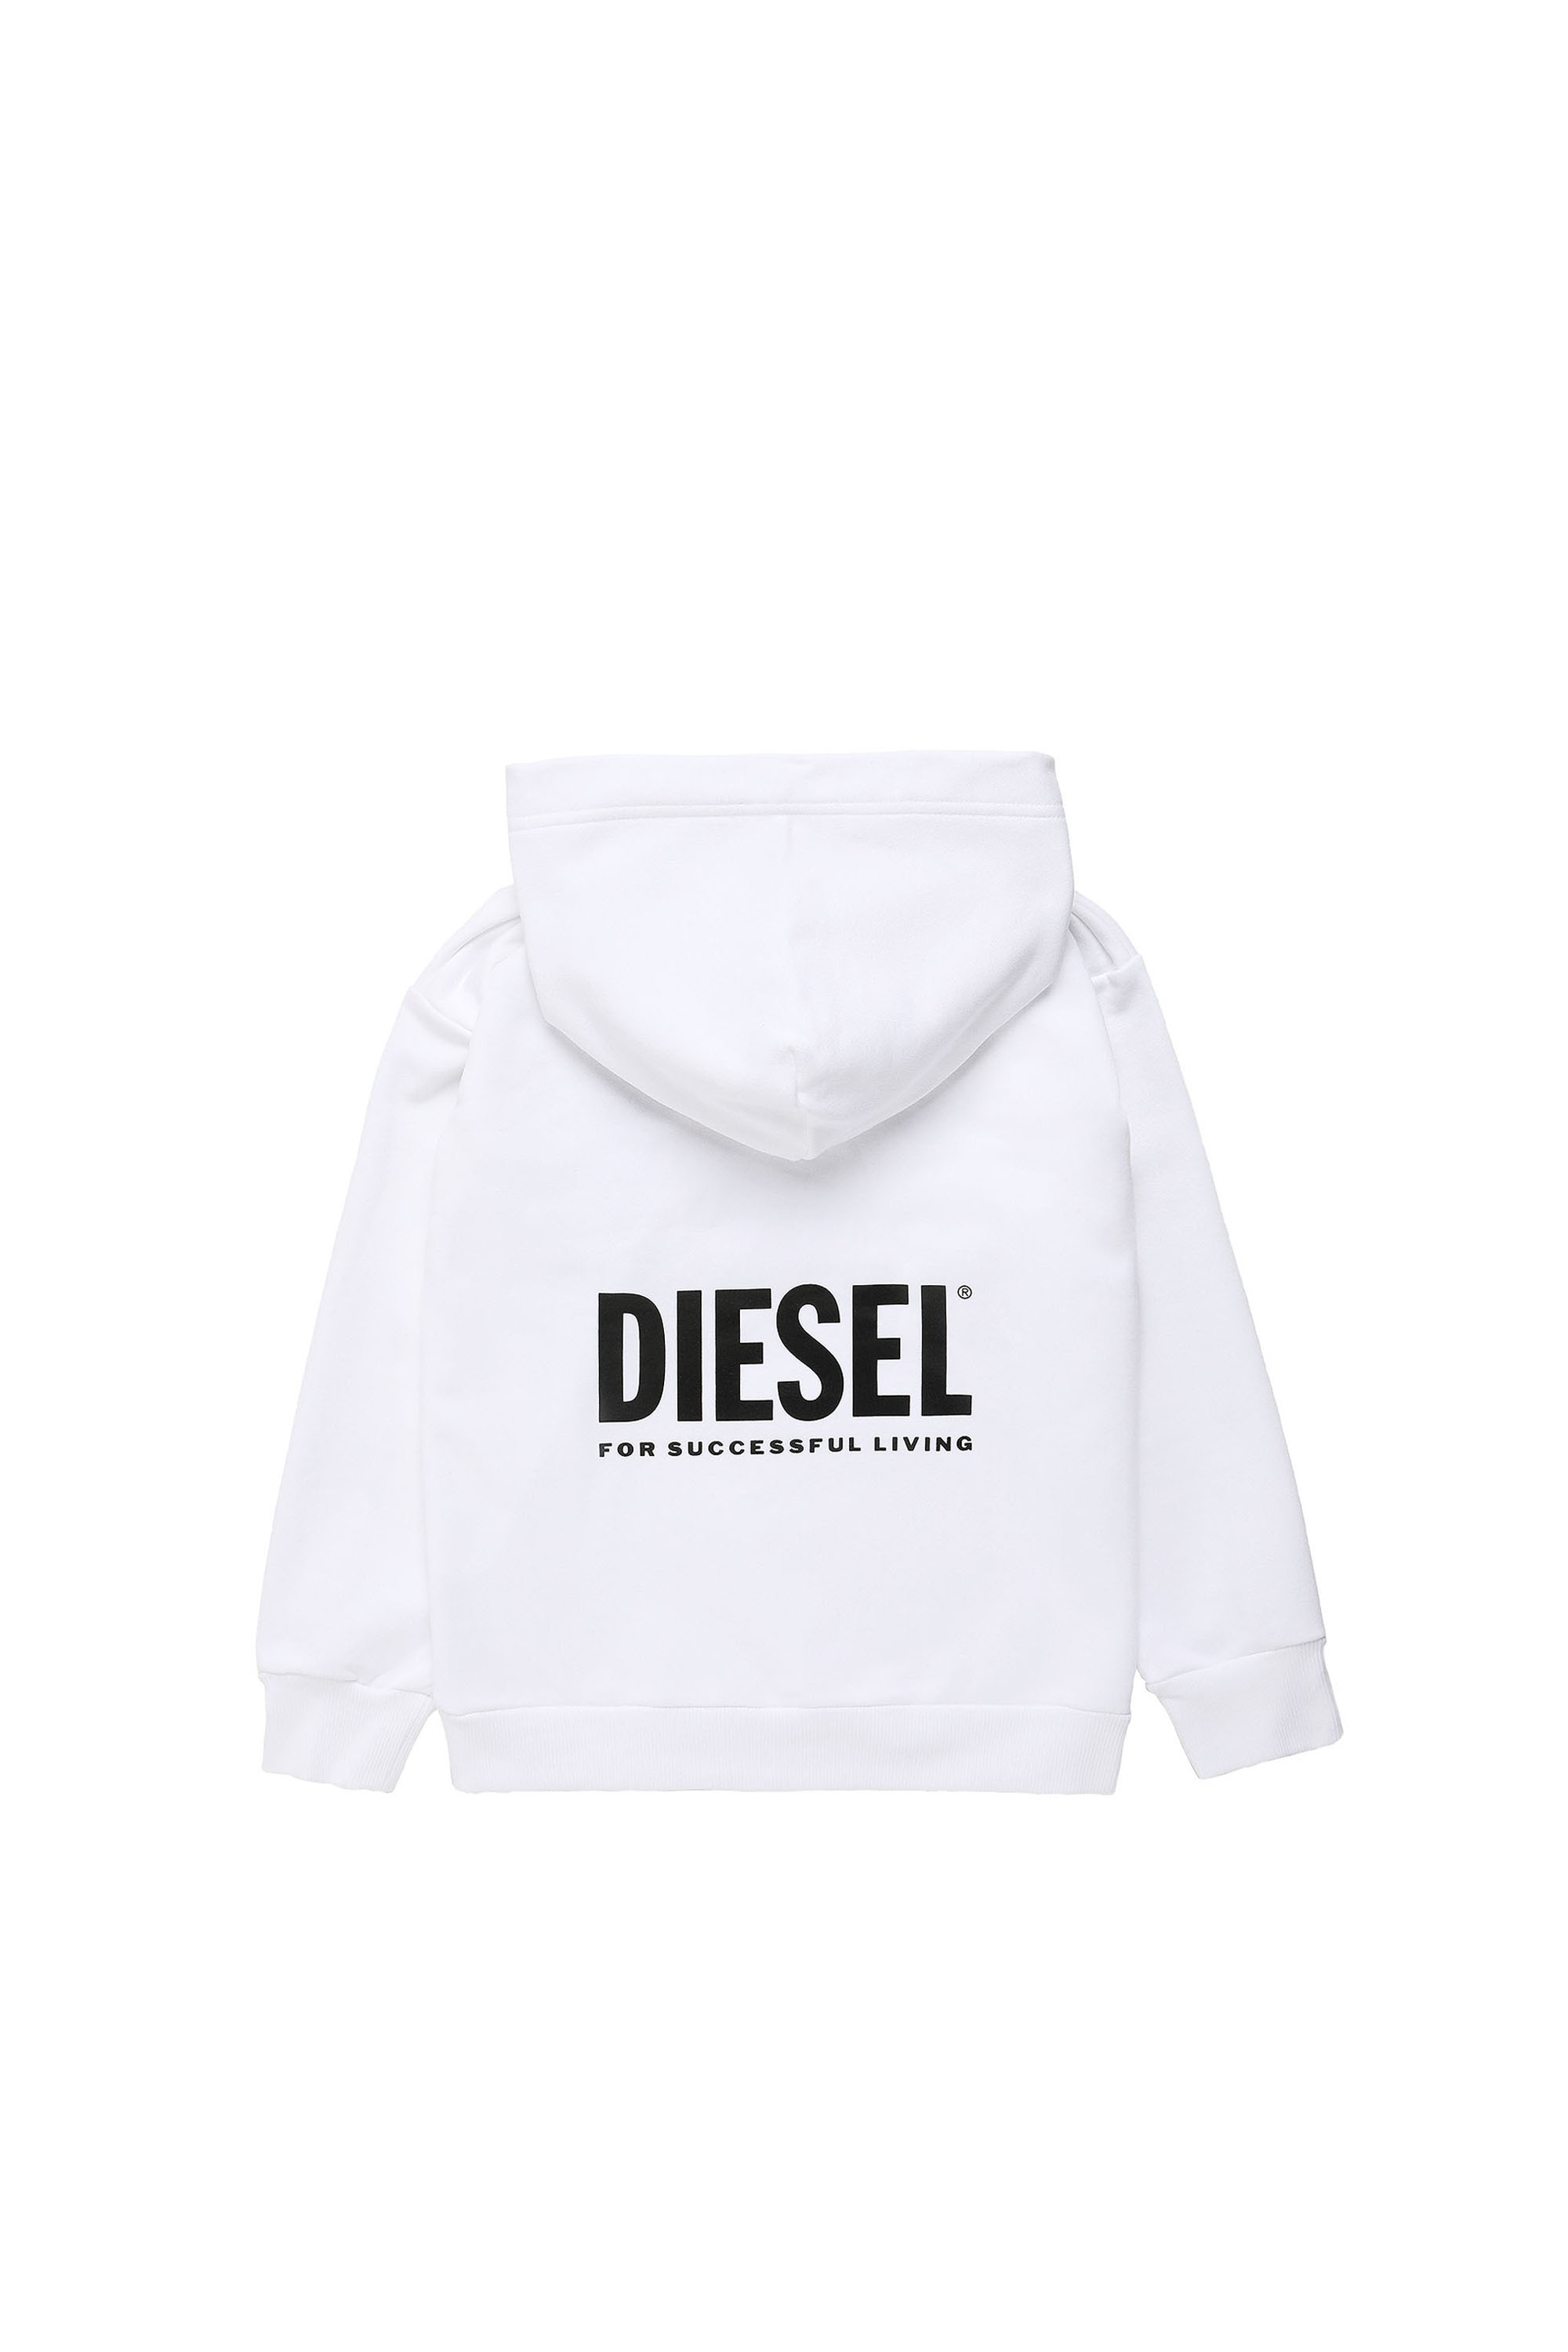 Diesel - LR SGIRKHOOD VIC, White - Image 2